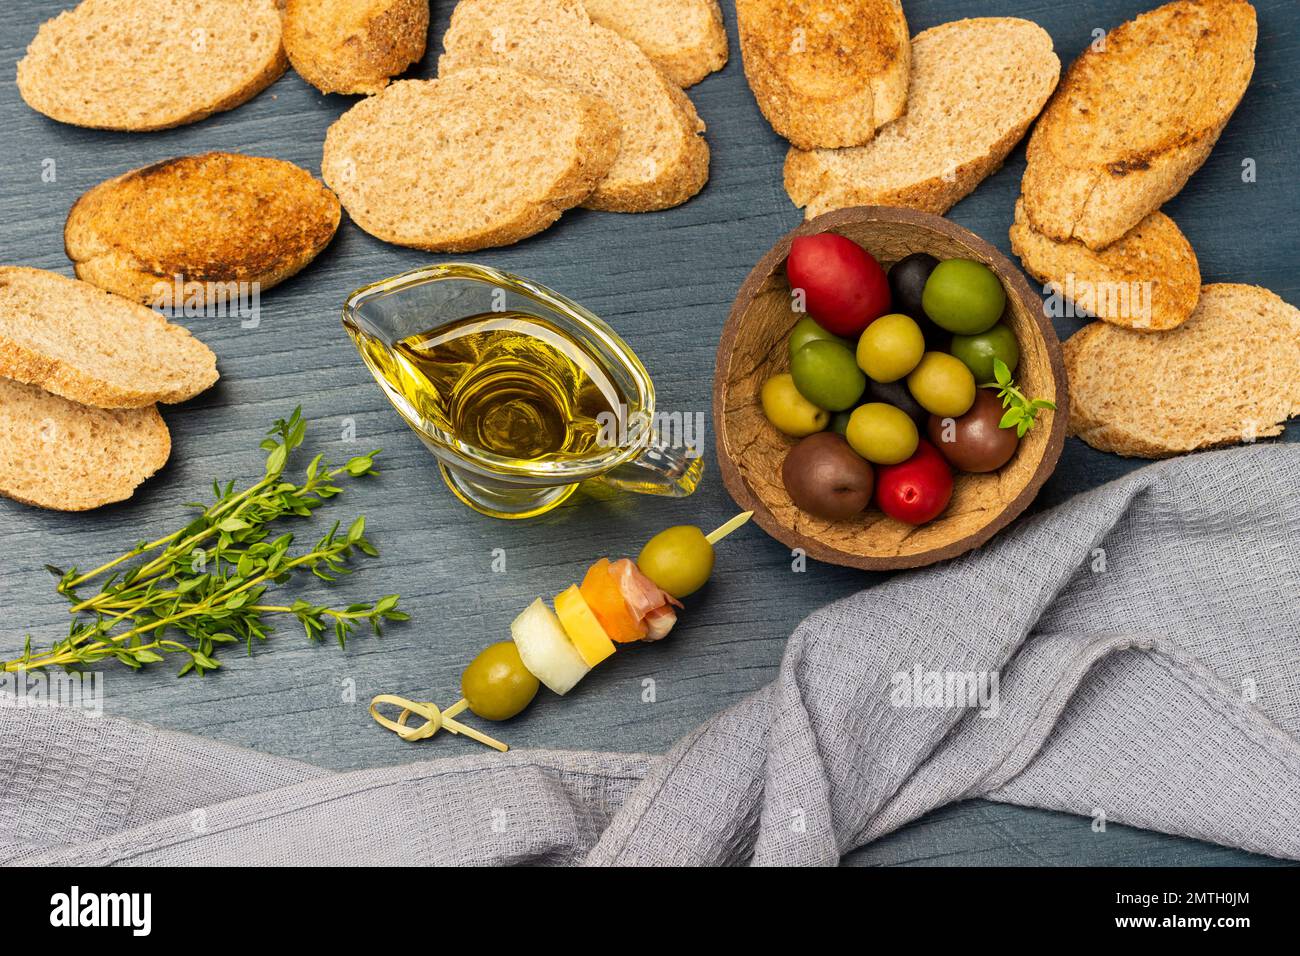 Getoastetes Brot. Graue Serviette. Oliven verschiedener Sorten und Farben in einer Kokosnussschale. Flach verlegt. Blauer Hintergrund. Stockfoto